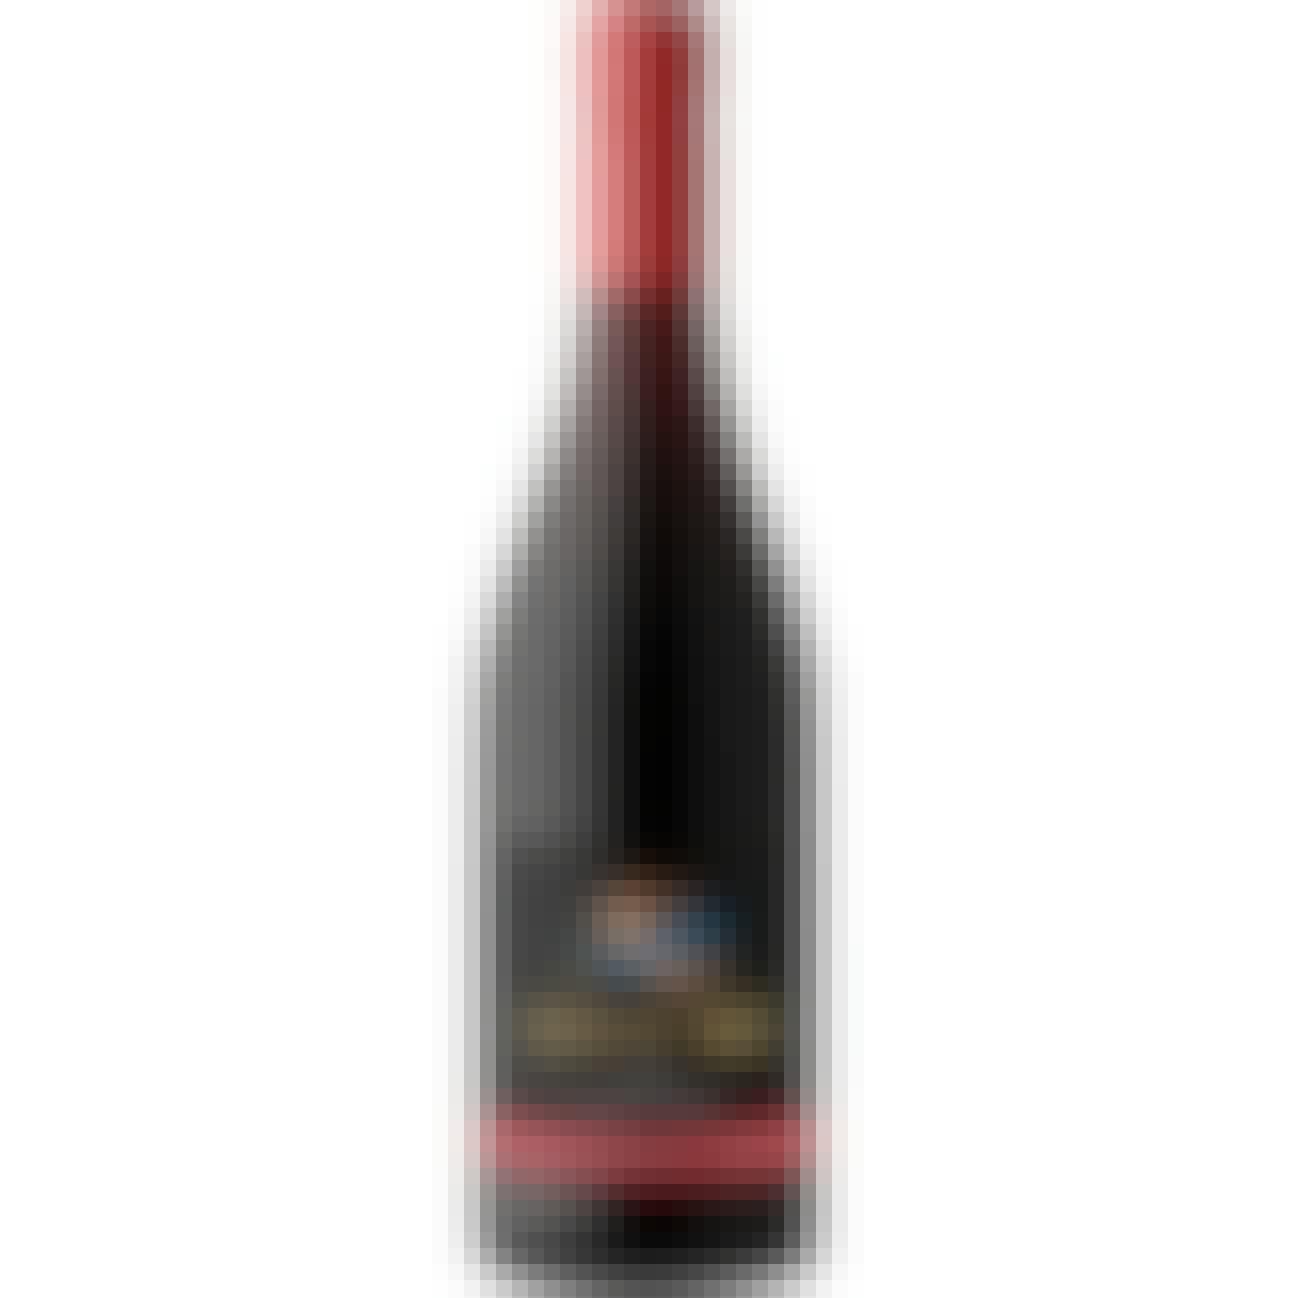 Siduri Santa Barbara Pinot Noir 2020 750ml